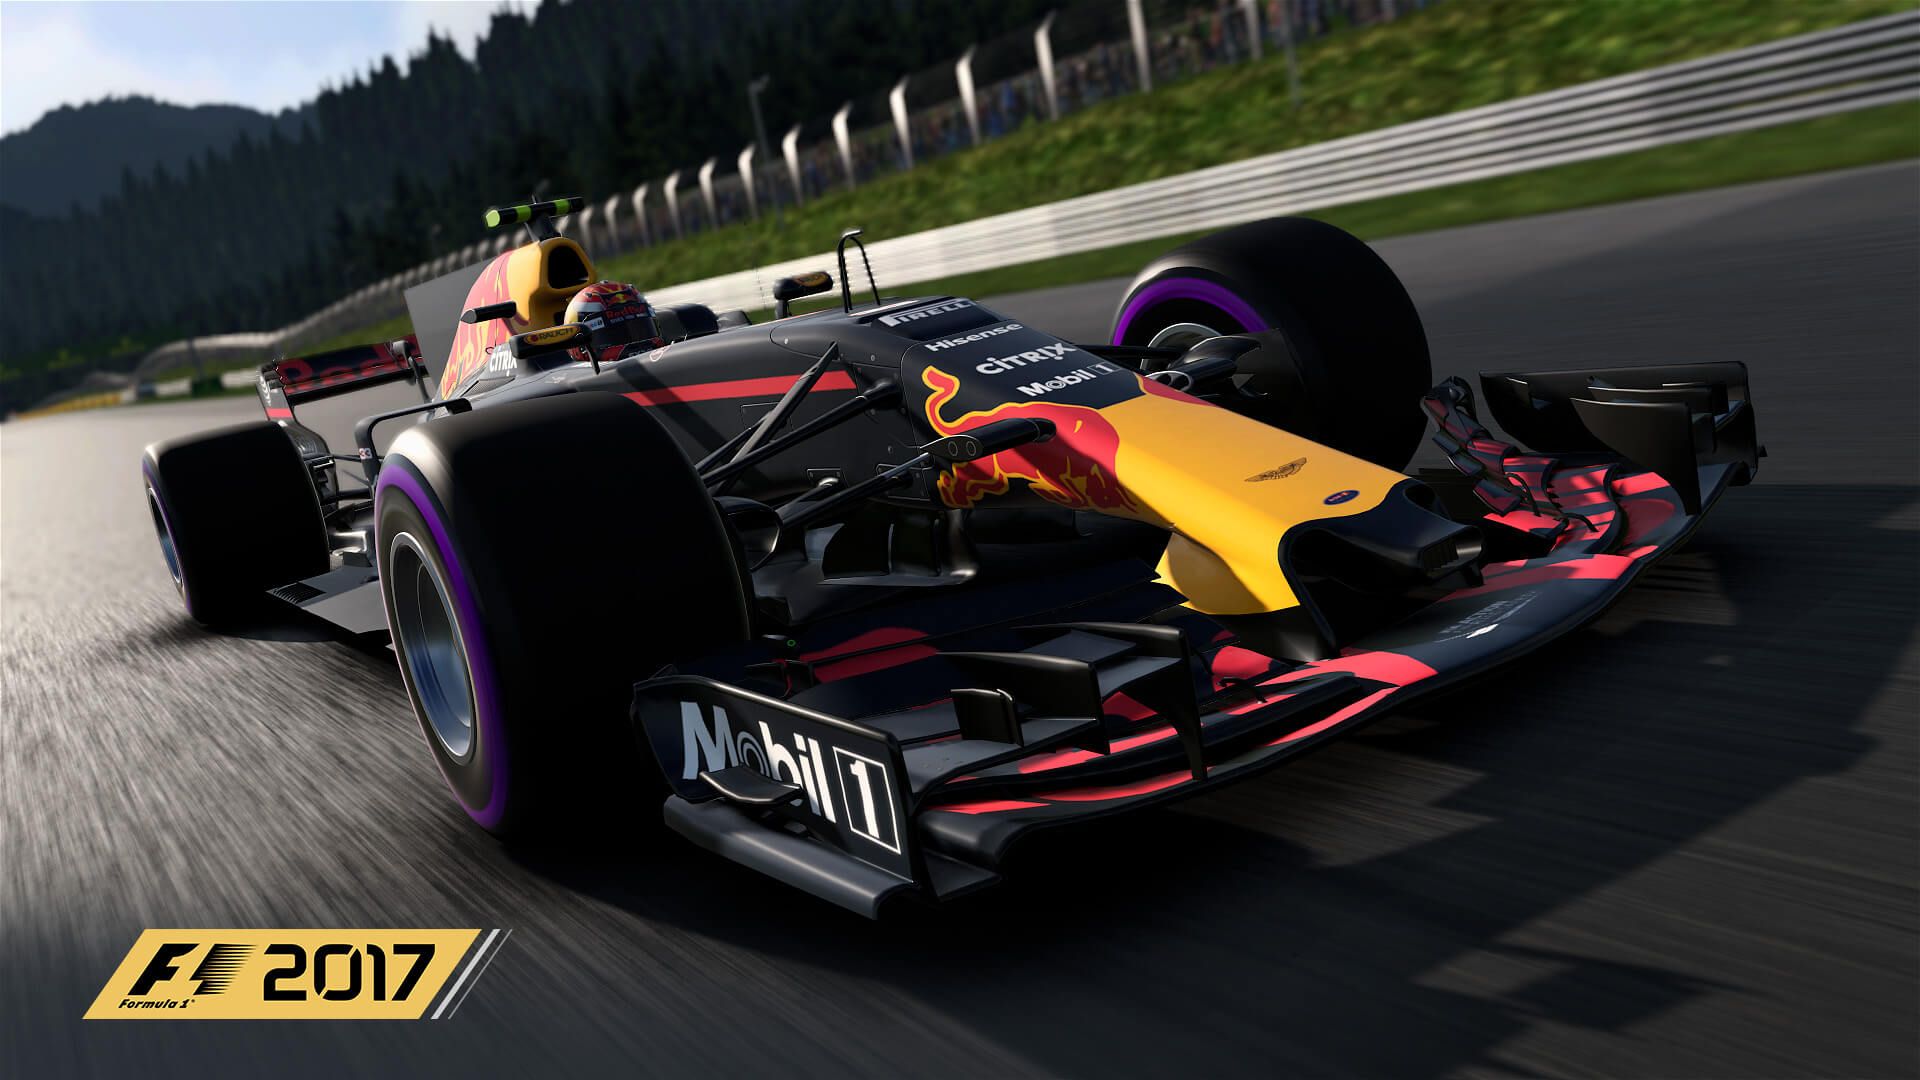 F1 2017 New Screenshots Released